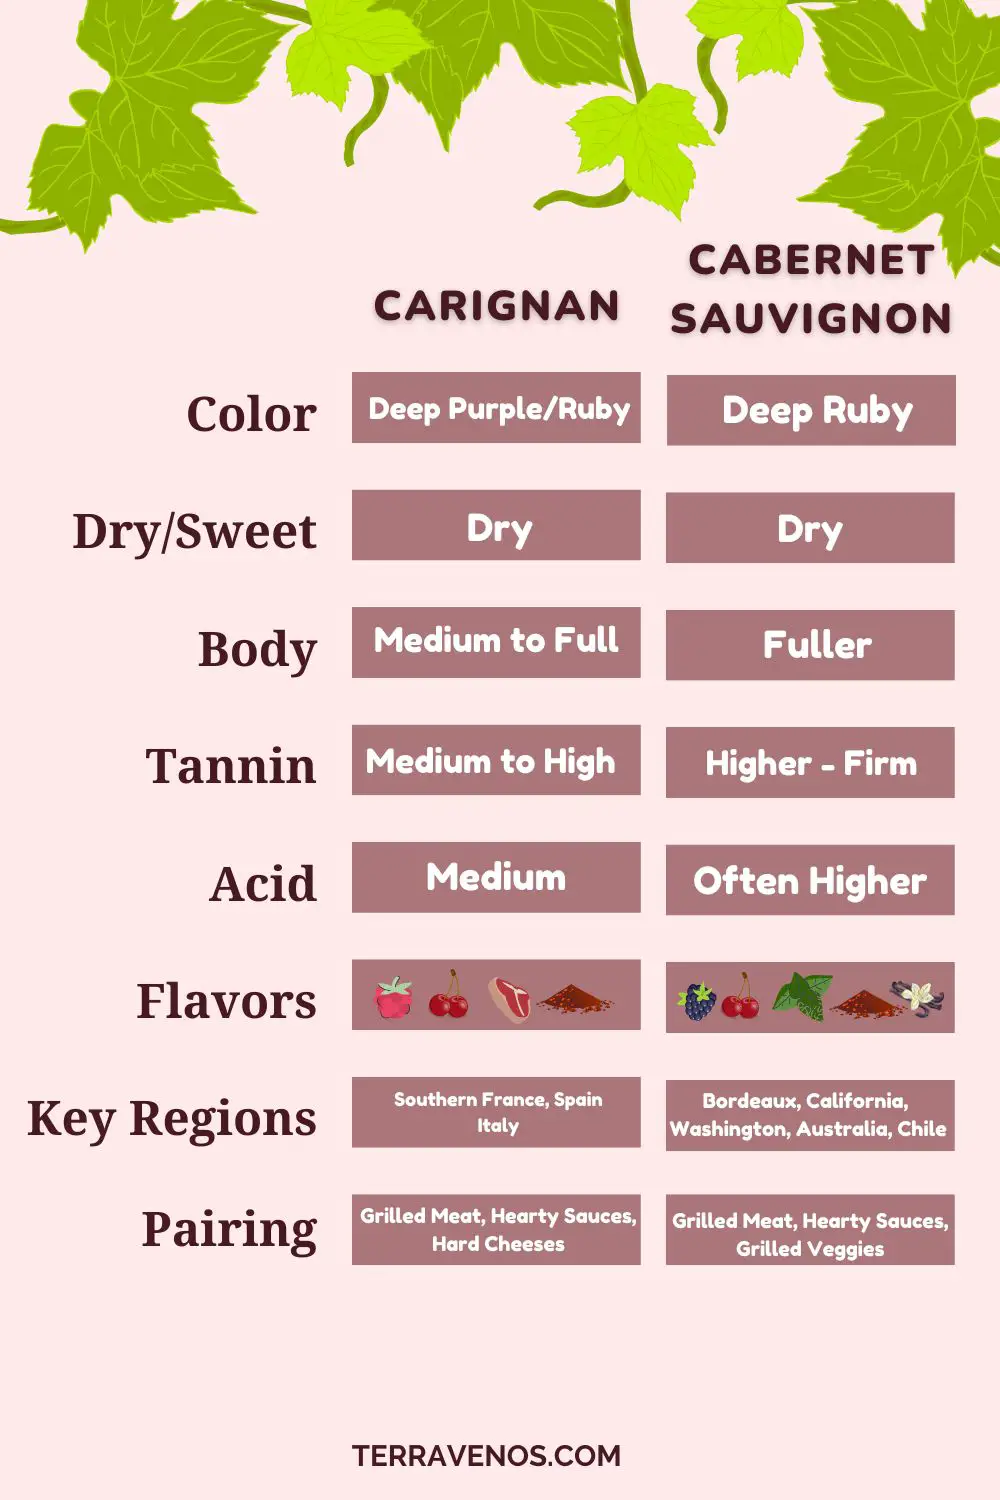 carignan-vs-cabernet-sauvignon-comparison-infographic